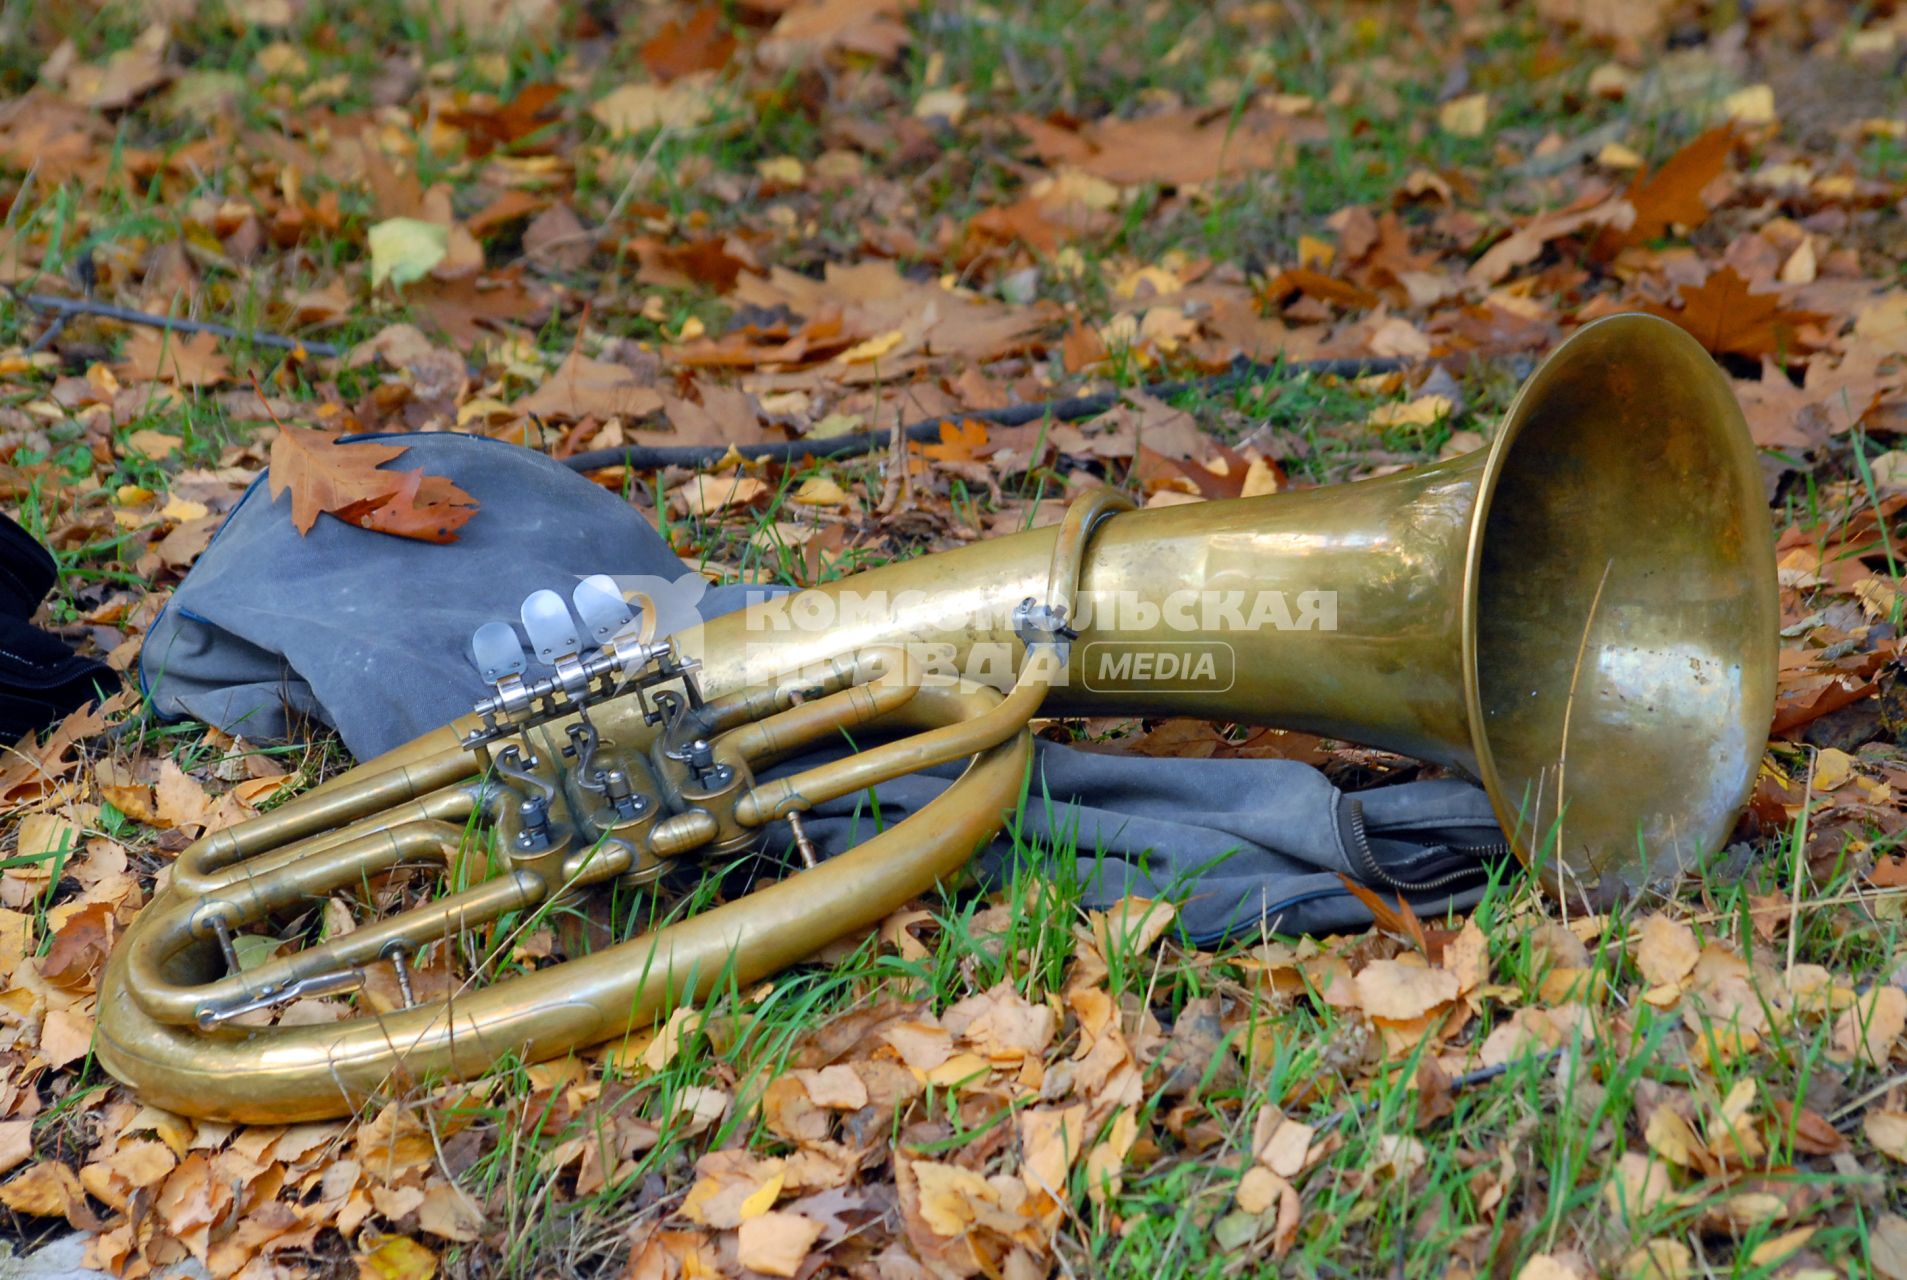 Медный духовой инструмент лежит на траве (туба), среди осенних листьев.